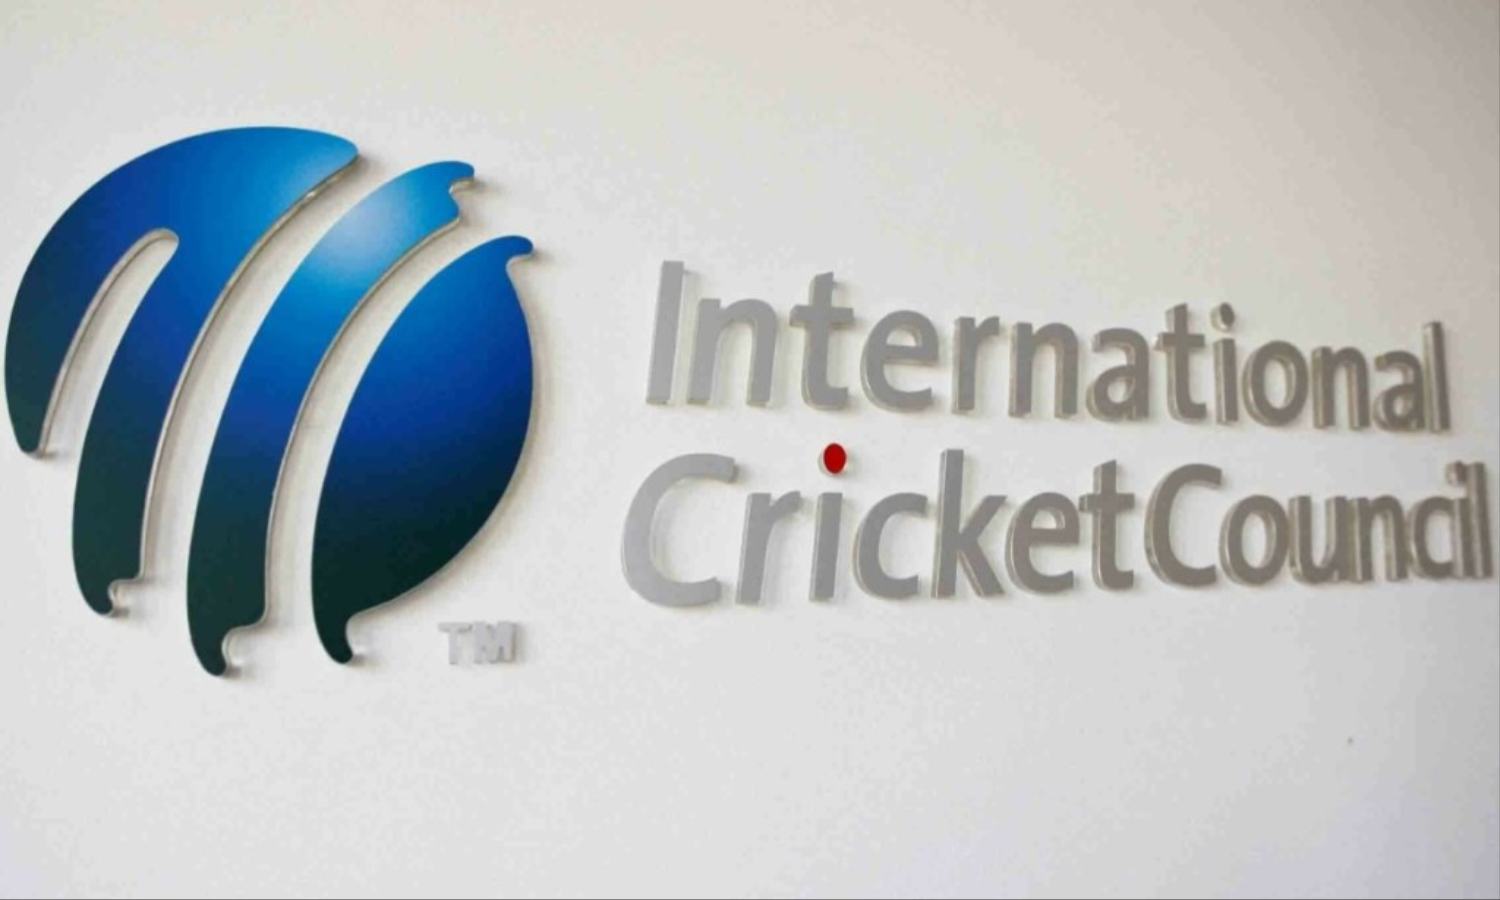 इंग्लैंड के इस खिलाड़ी पर लगा Match Fixing का आरोप, ICC ने लगाया बैन